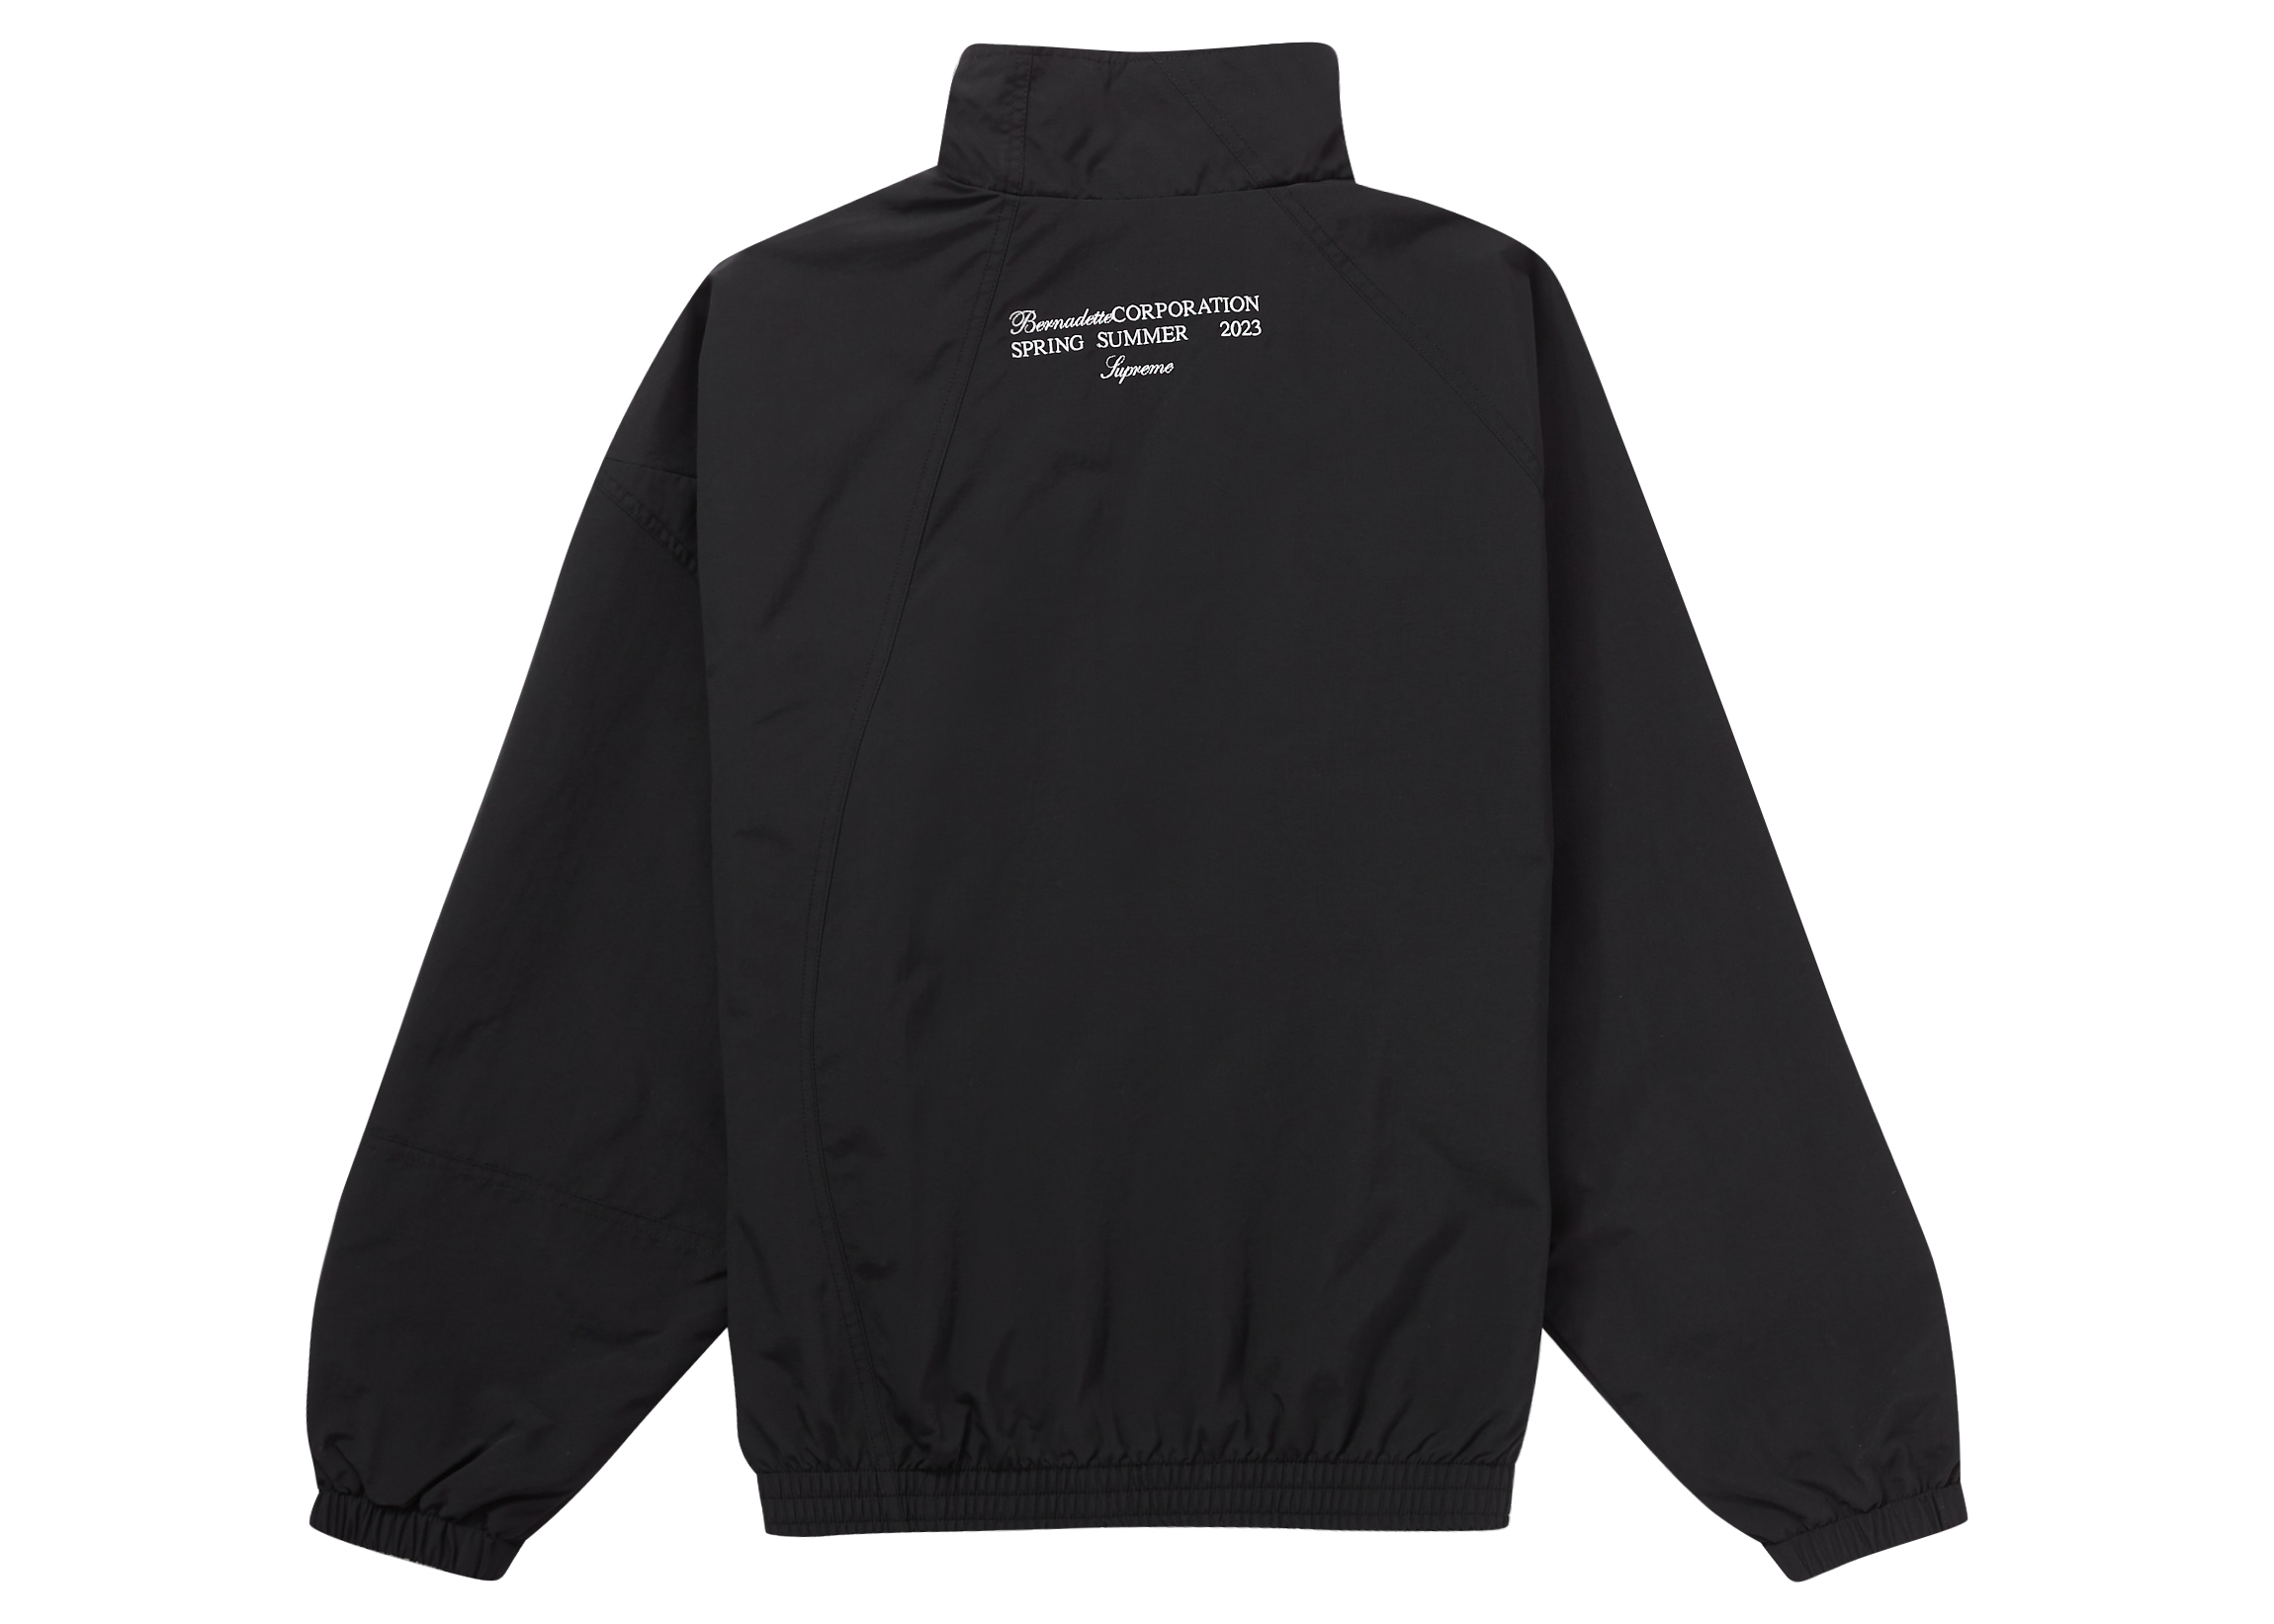 Supreme Bernadette Corporation Track Jacket Black